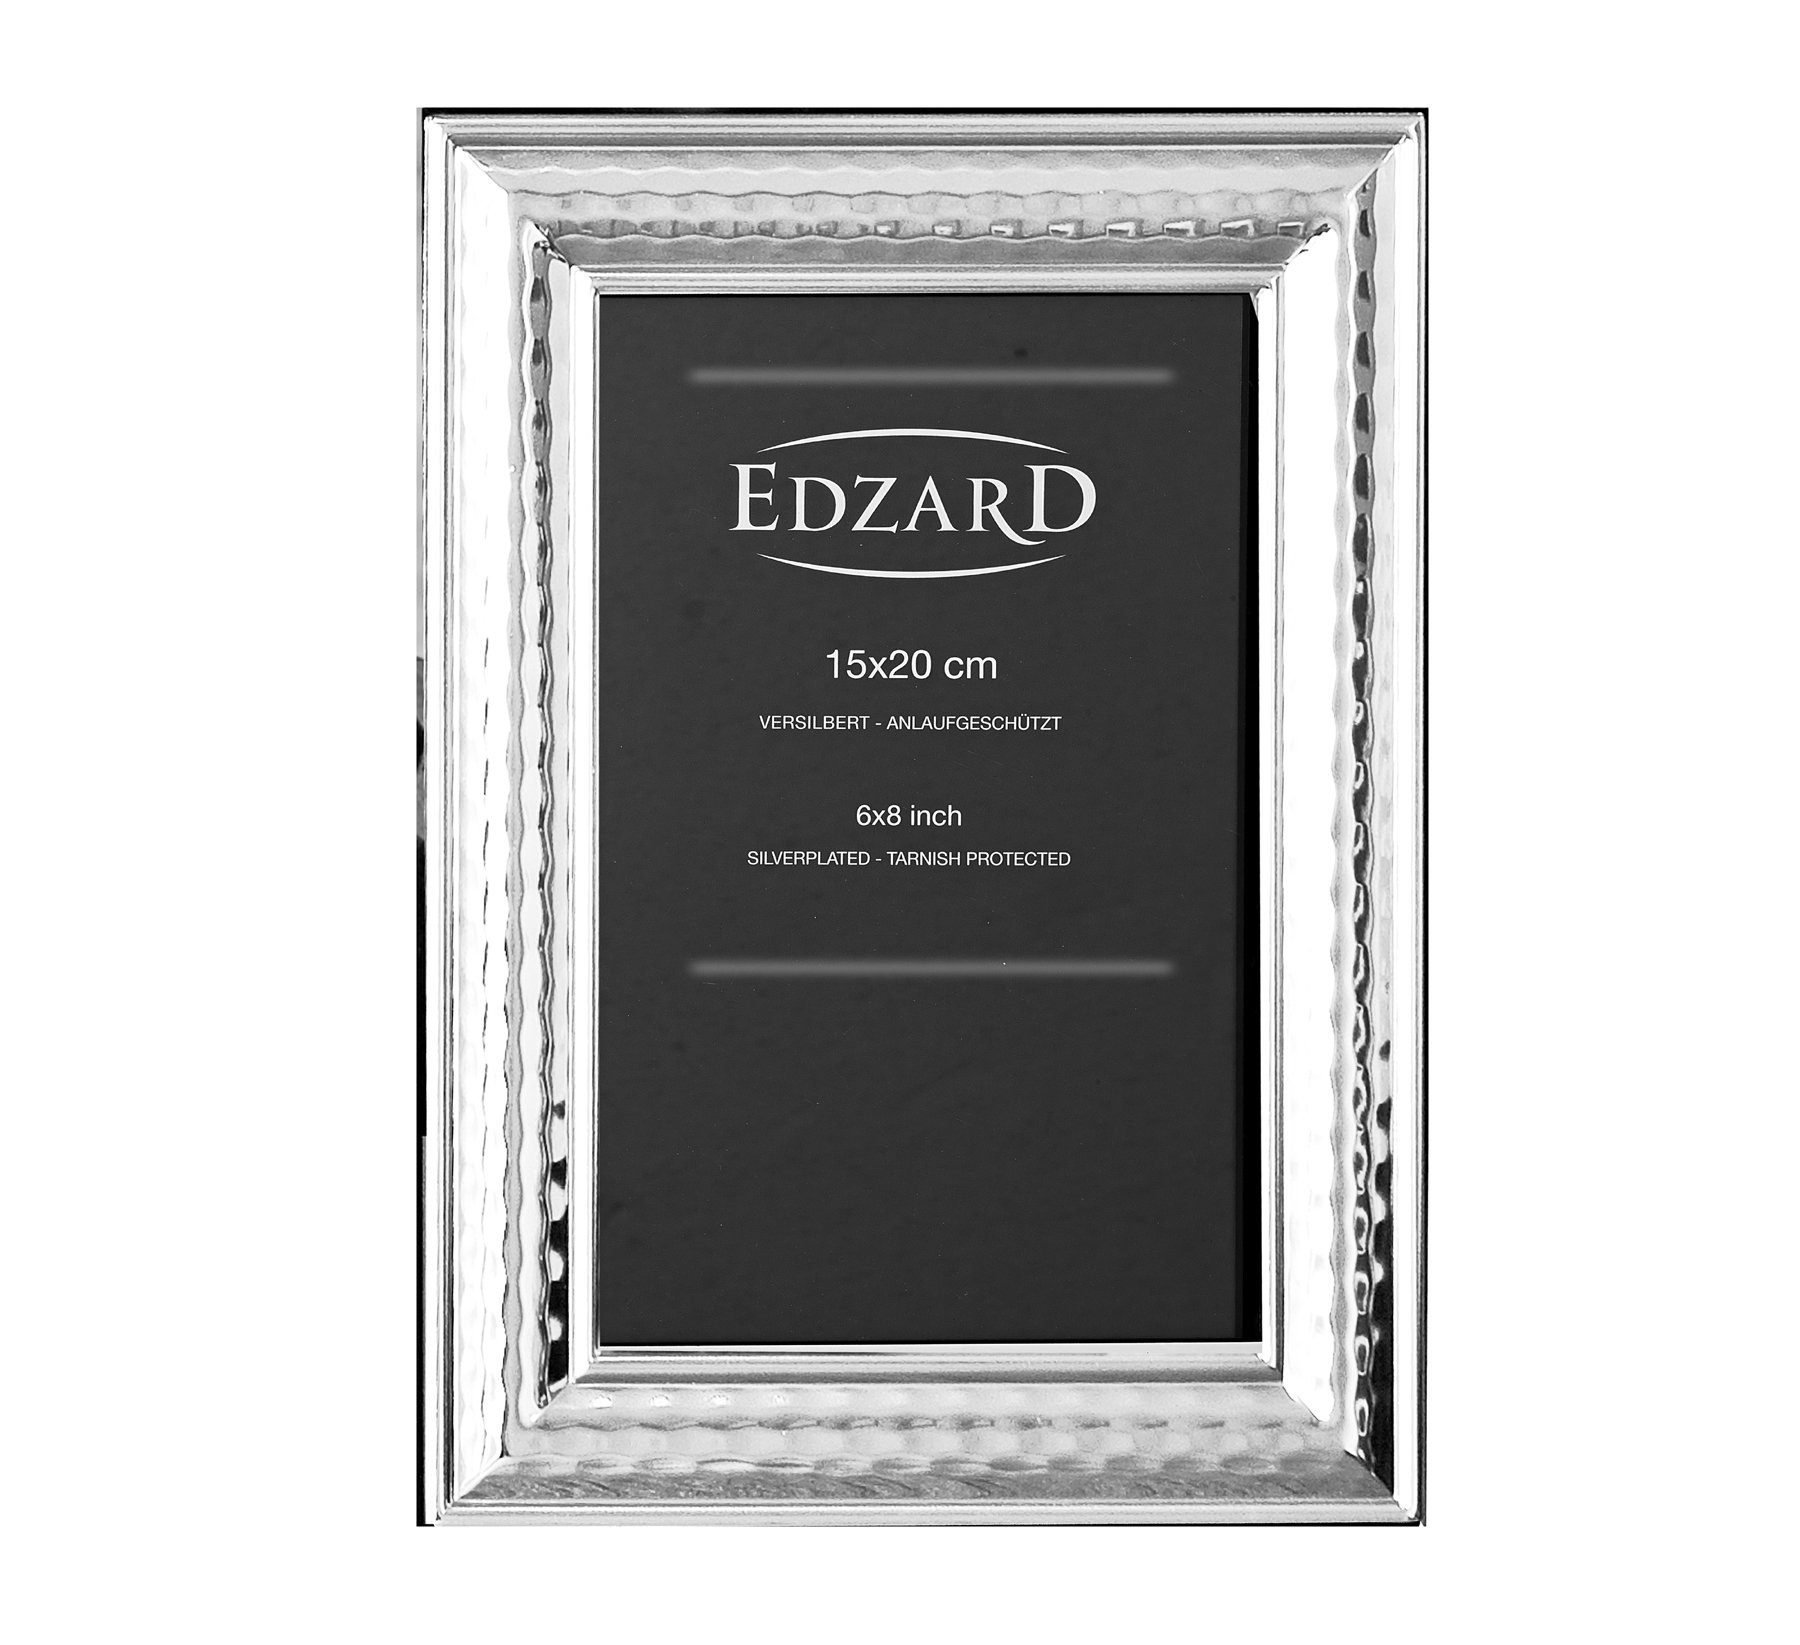 EDZARD Bilderrahmen und für Urbino, anlaufgeschützt, Foto 15x20 cm versilbert